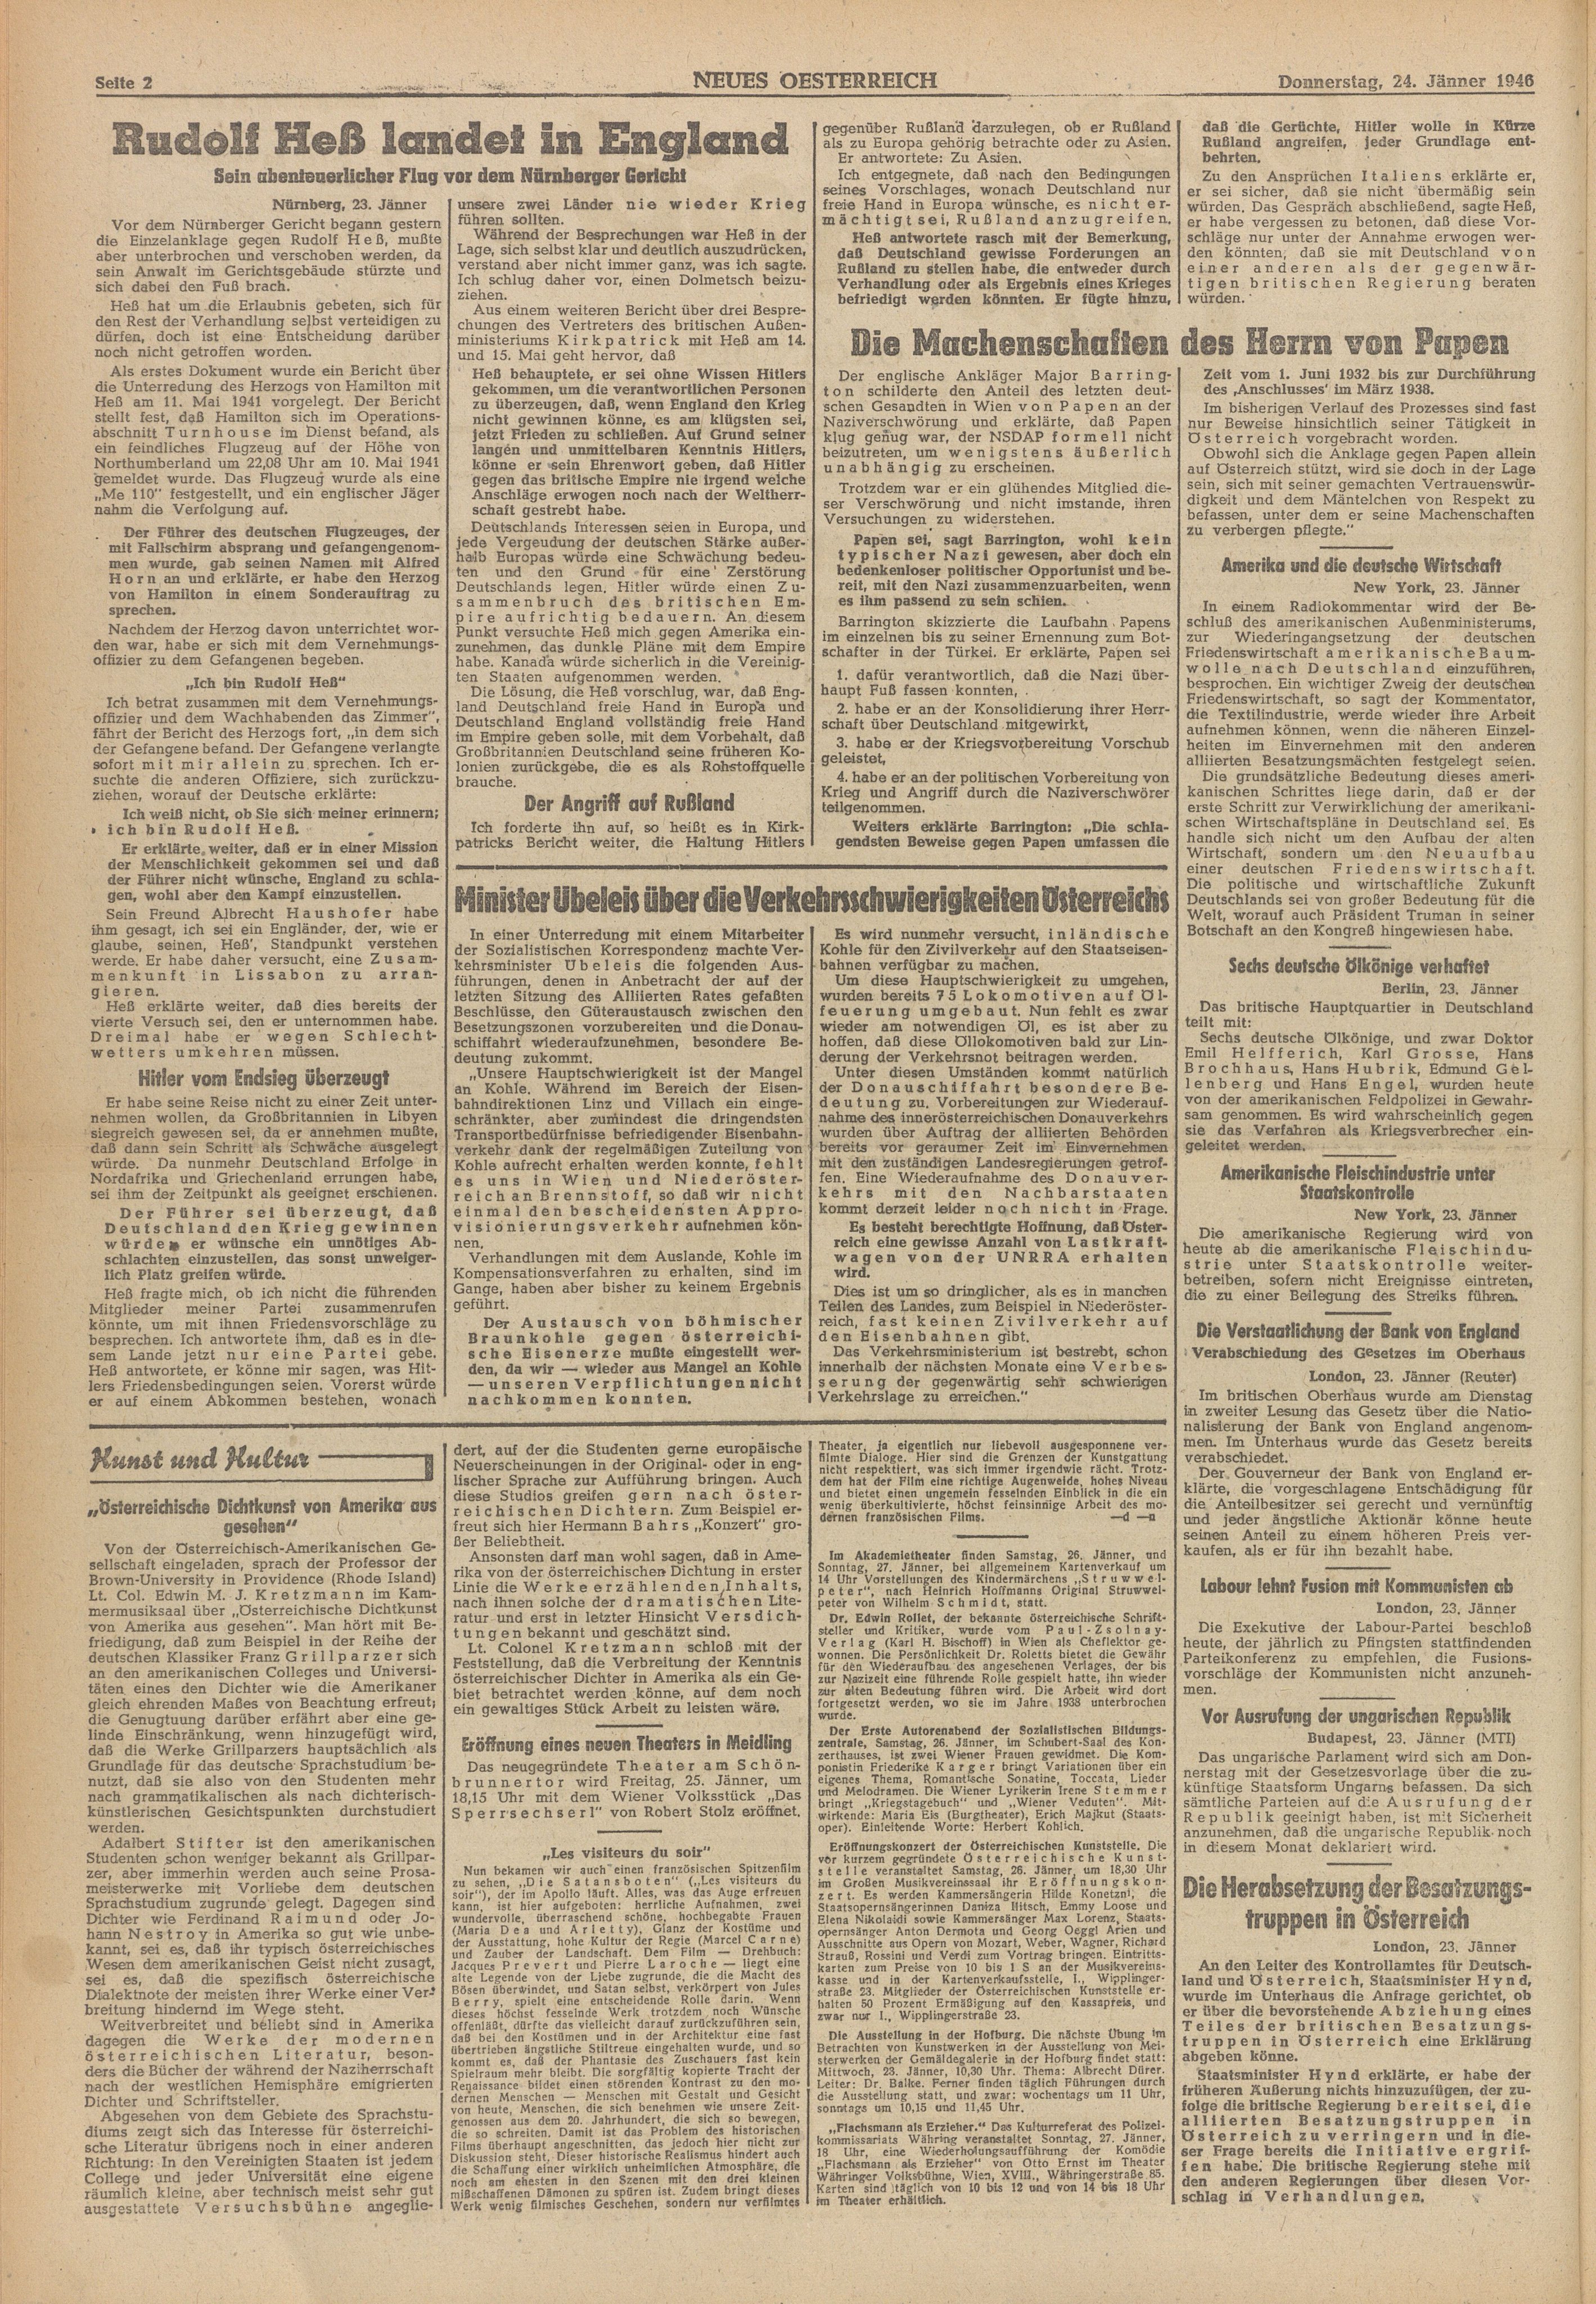  Zeitung-Neues-Oesterreich-1946-01-24-Seite-2  